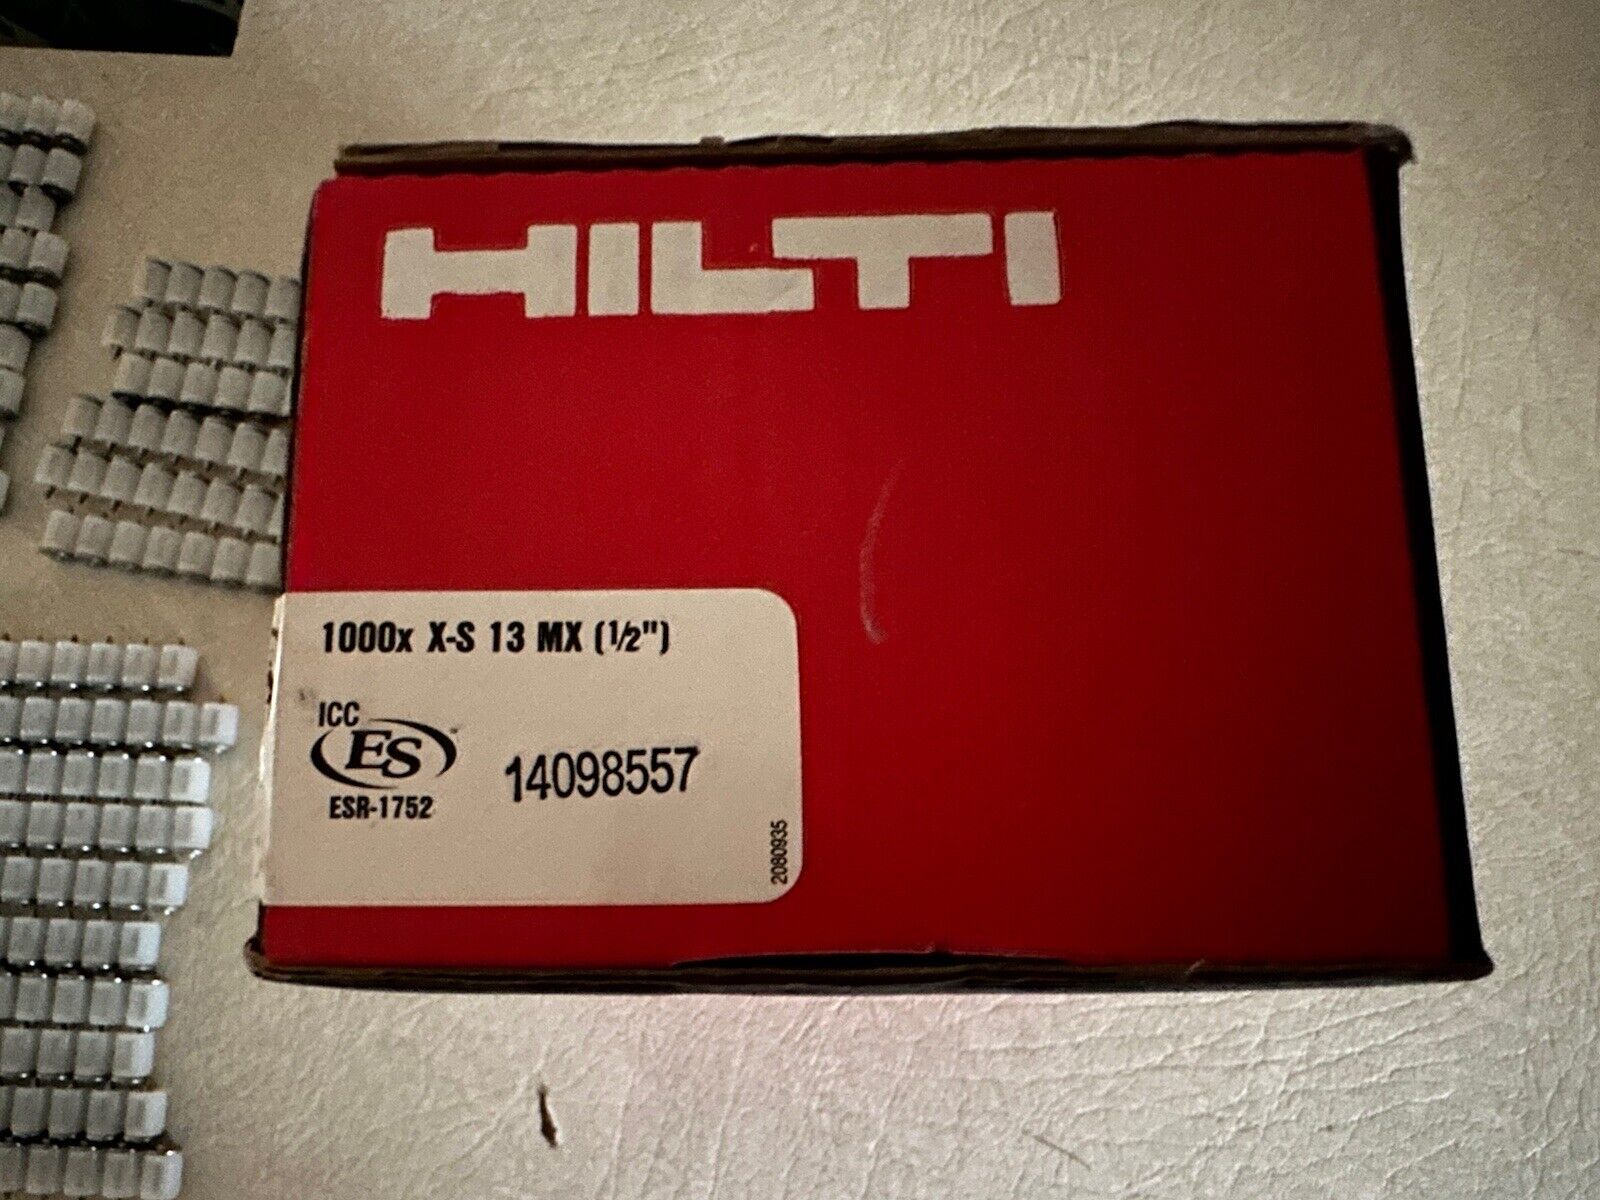 Hilti X-S 13 MX #274062 (x960) DX & MX Power Tools